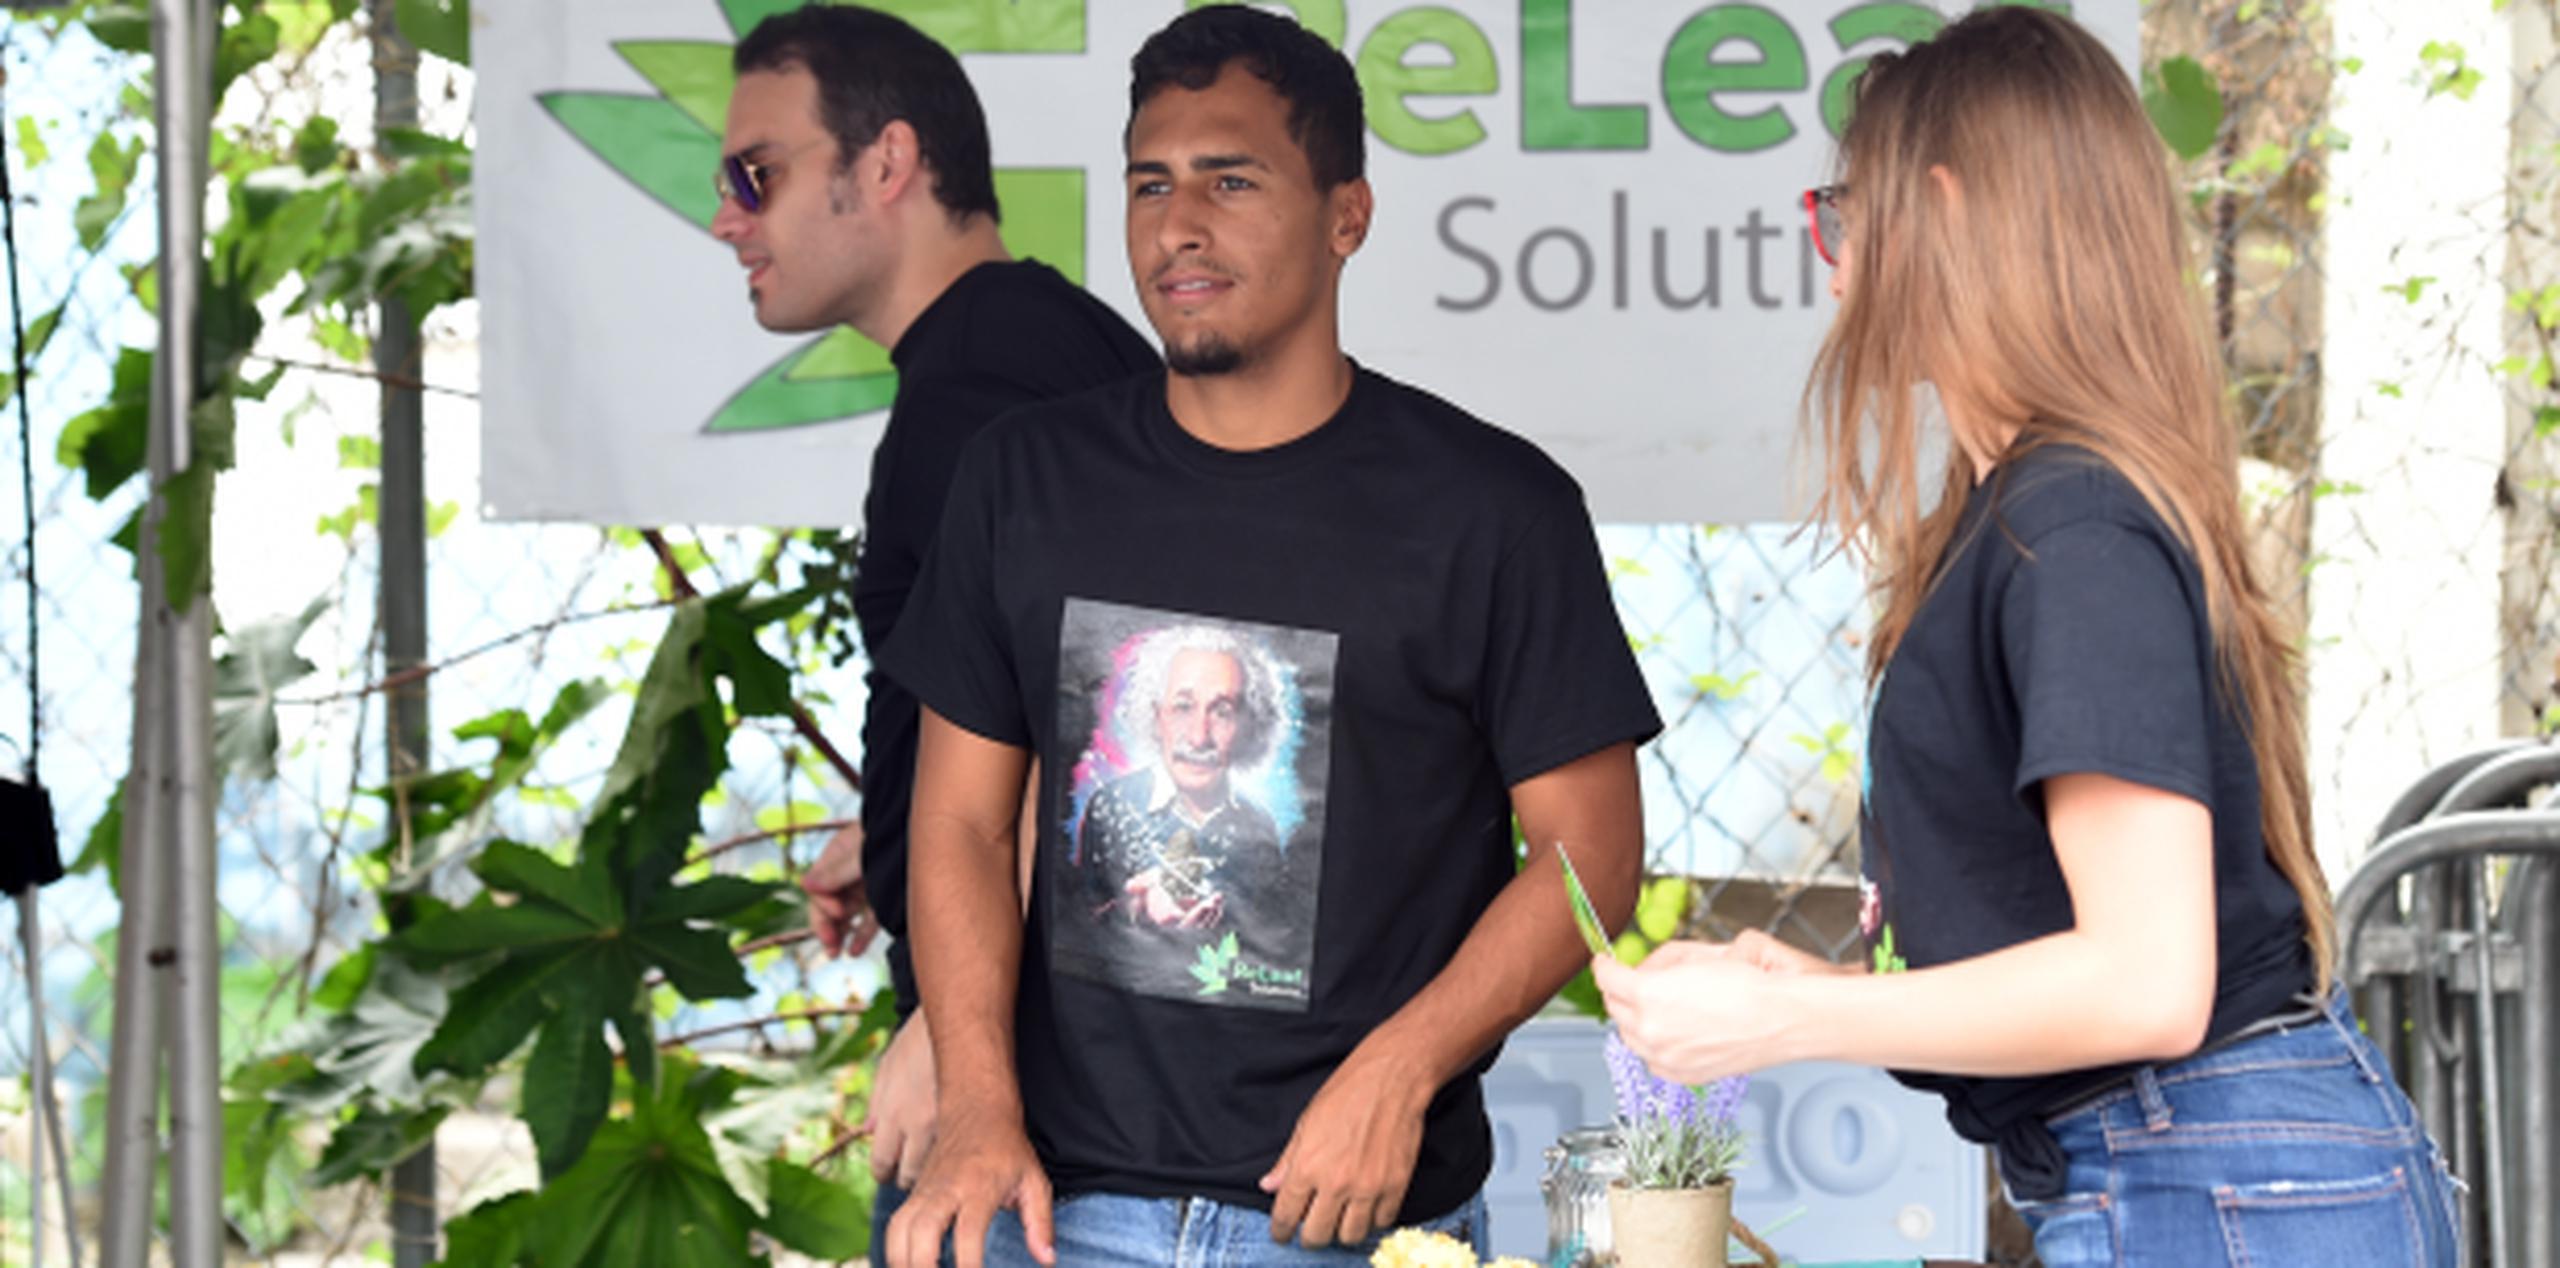 Para Carlos Alexis Nieves, el despunte de la industria del cannabis medicinal significó un cambio de empleo: de pasar podadoras en patios ajenos a ‘budtender’ hace dos meses. (andre.kang@gfrmedia.com)

